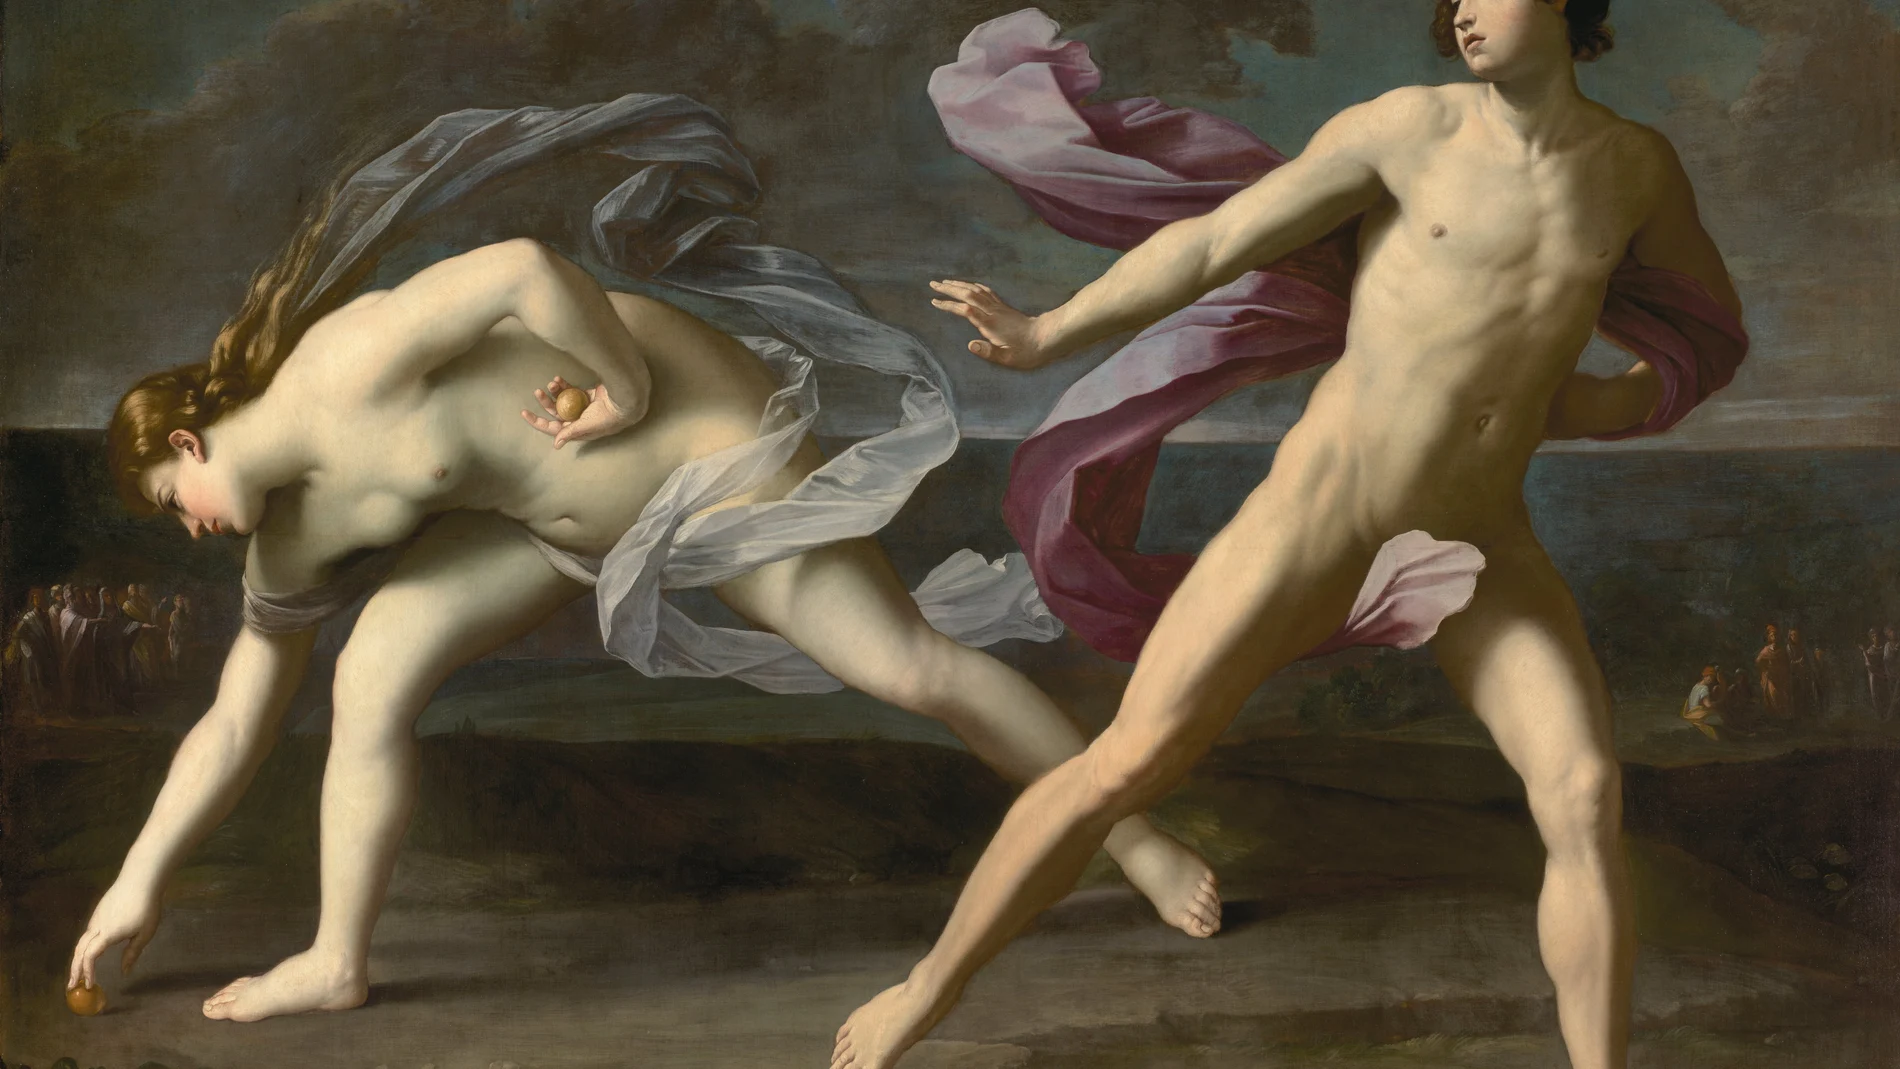  La emocionante muestra del pintor Guido Reni llega al Prado